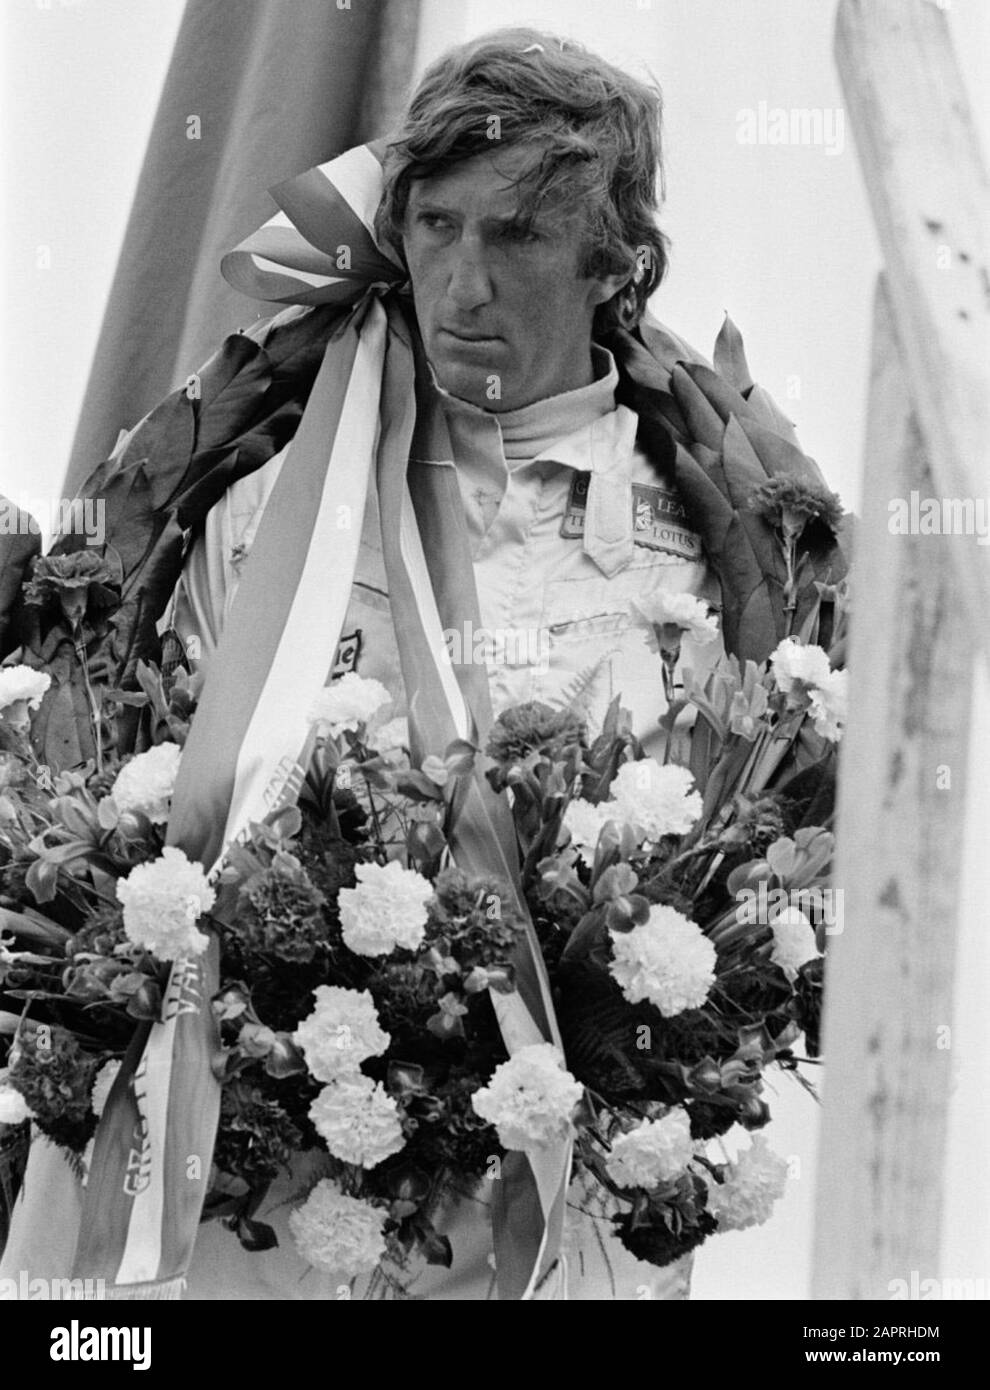 Grand Prix 1970 van Nederland voor Formule I wagens , Zandvoort; J. Rindt in krans, kop. Stock Photo